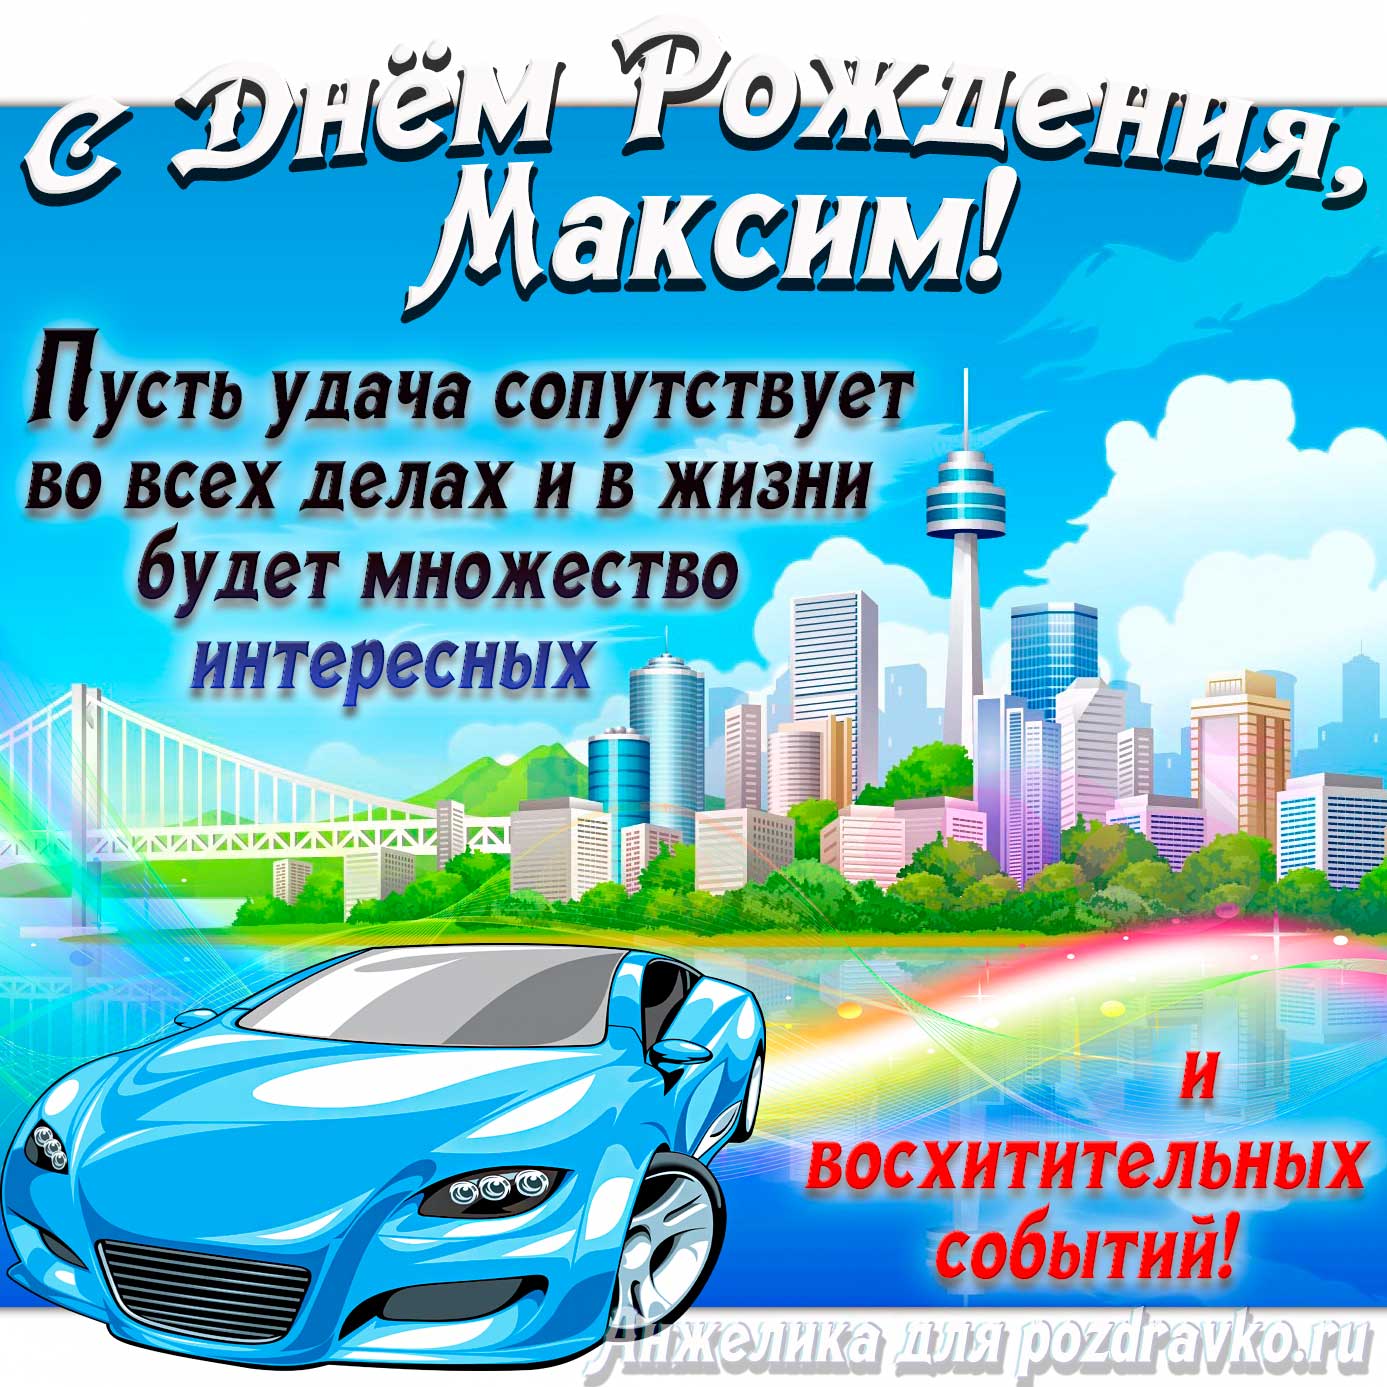 Открытка - с Днём Рождения Максим с голубой машиной и пожеланием. Скачать бесплатно или отправить картинку.